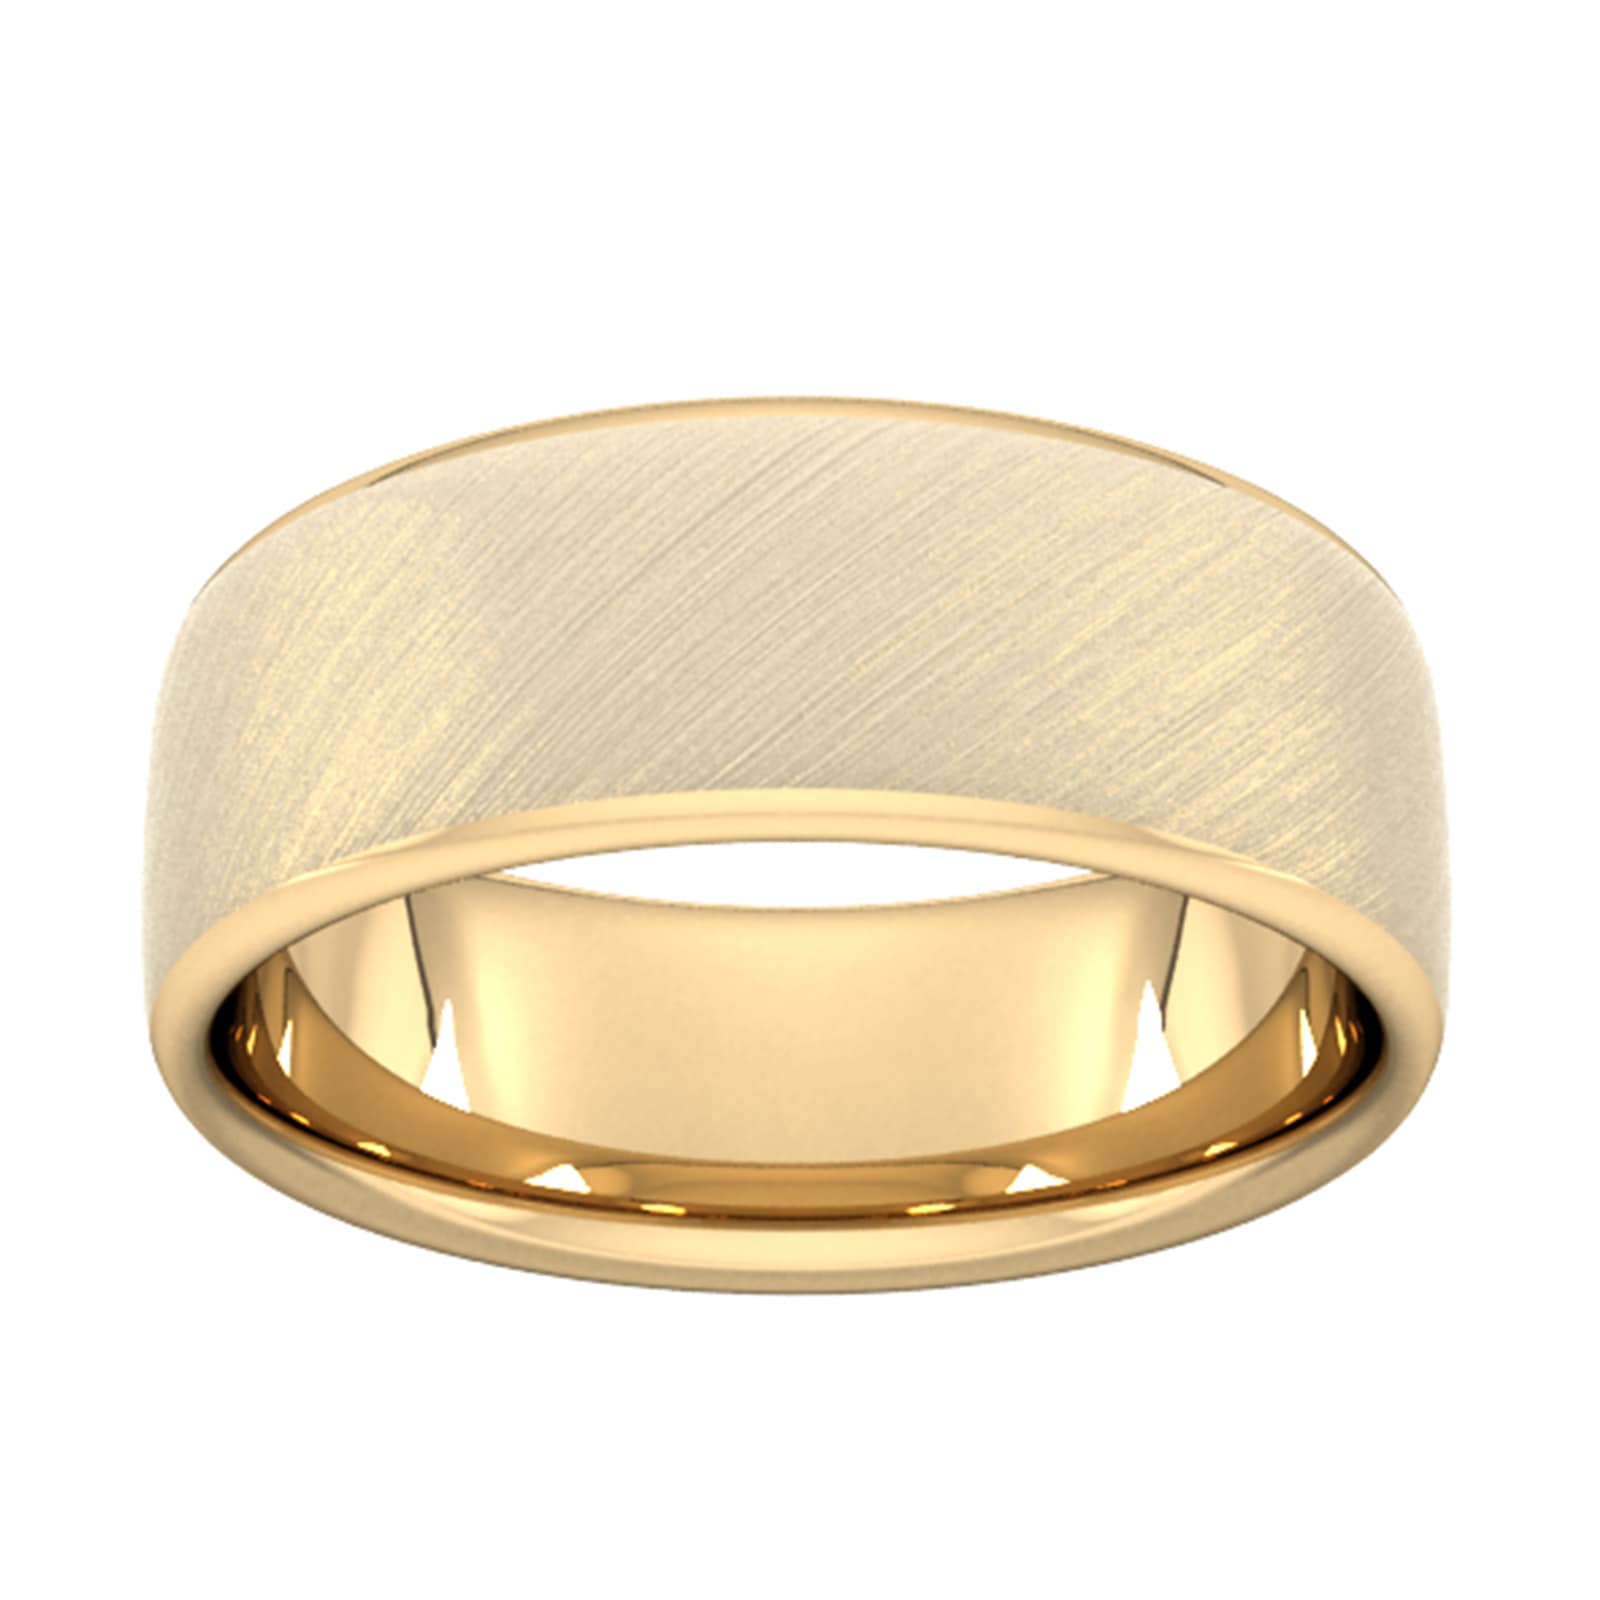 8mm Slight Court Extra Heavy Diagonal Matt Finish Wedding Ring In 18 Carat Yellow Gold - Ring Size W